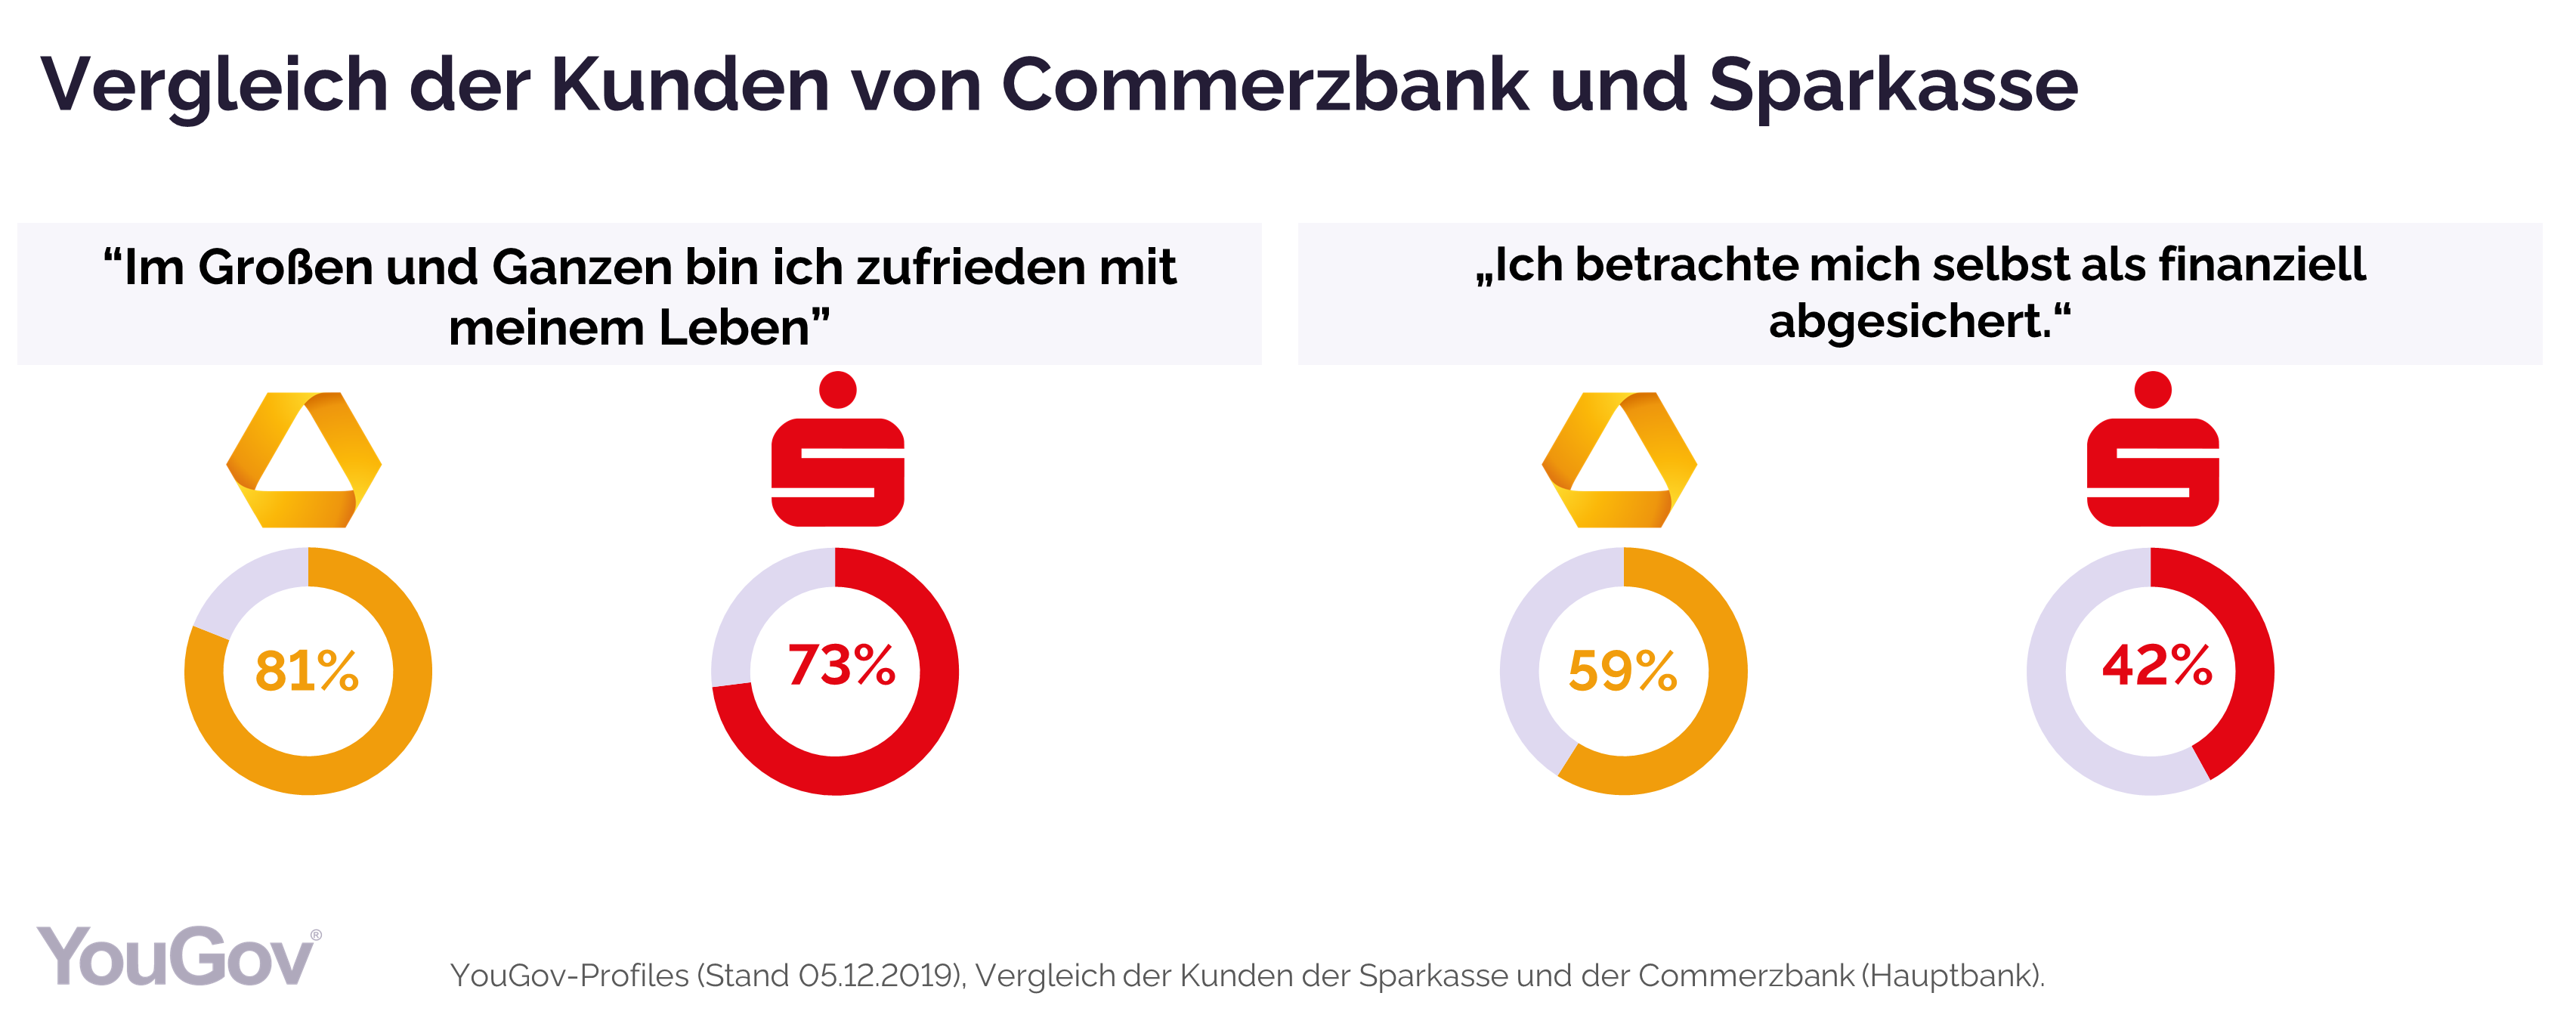 Vergleich der Kunden der Sparkasse und Commerzbank